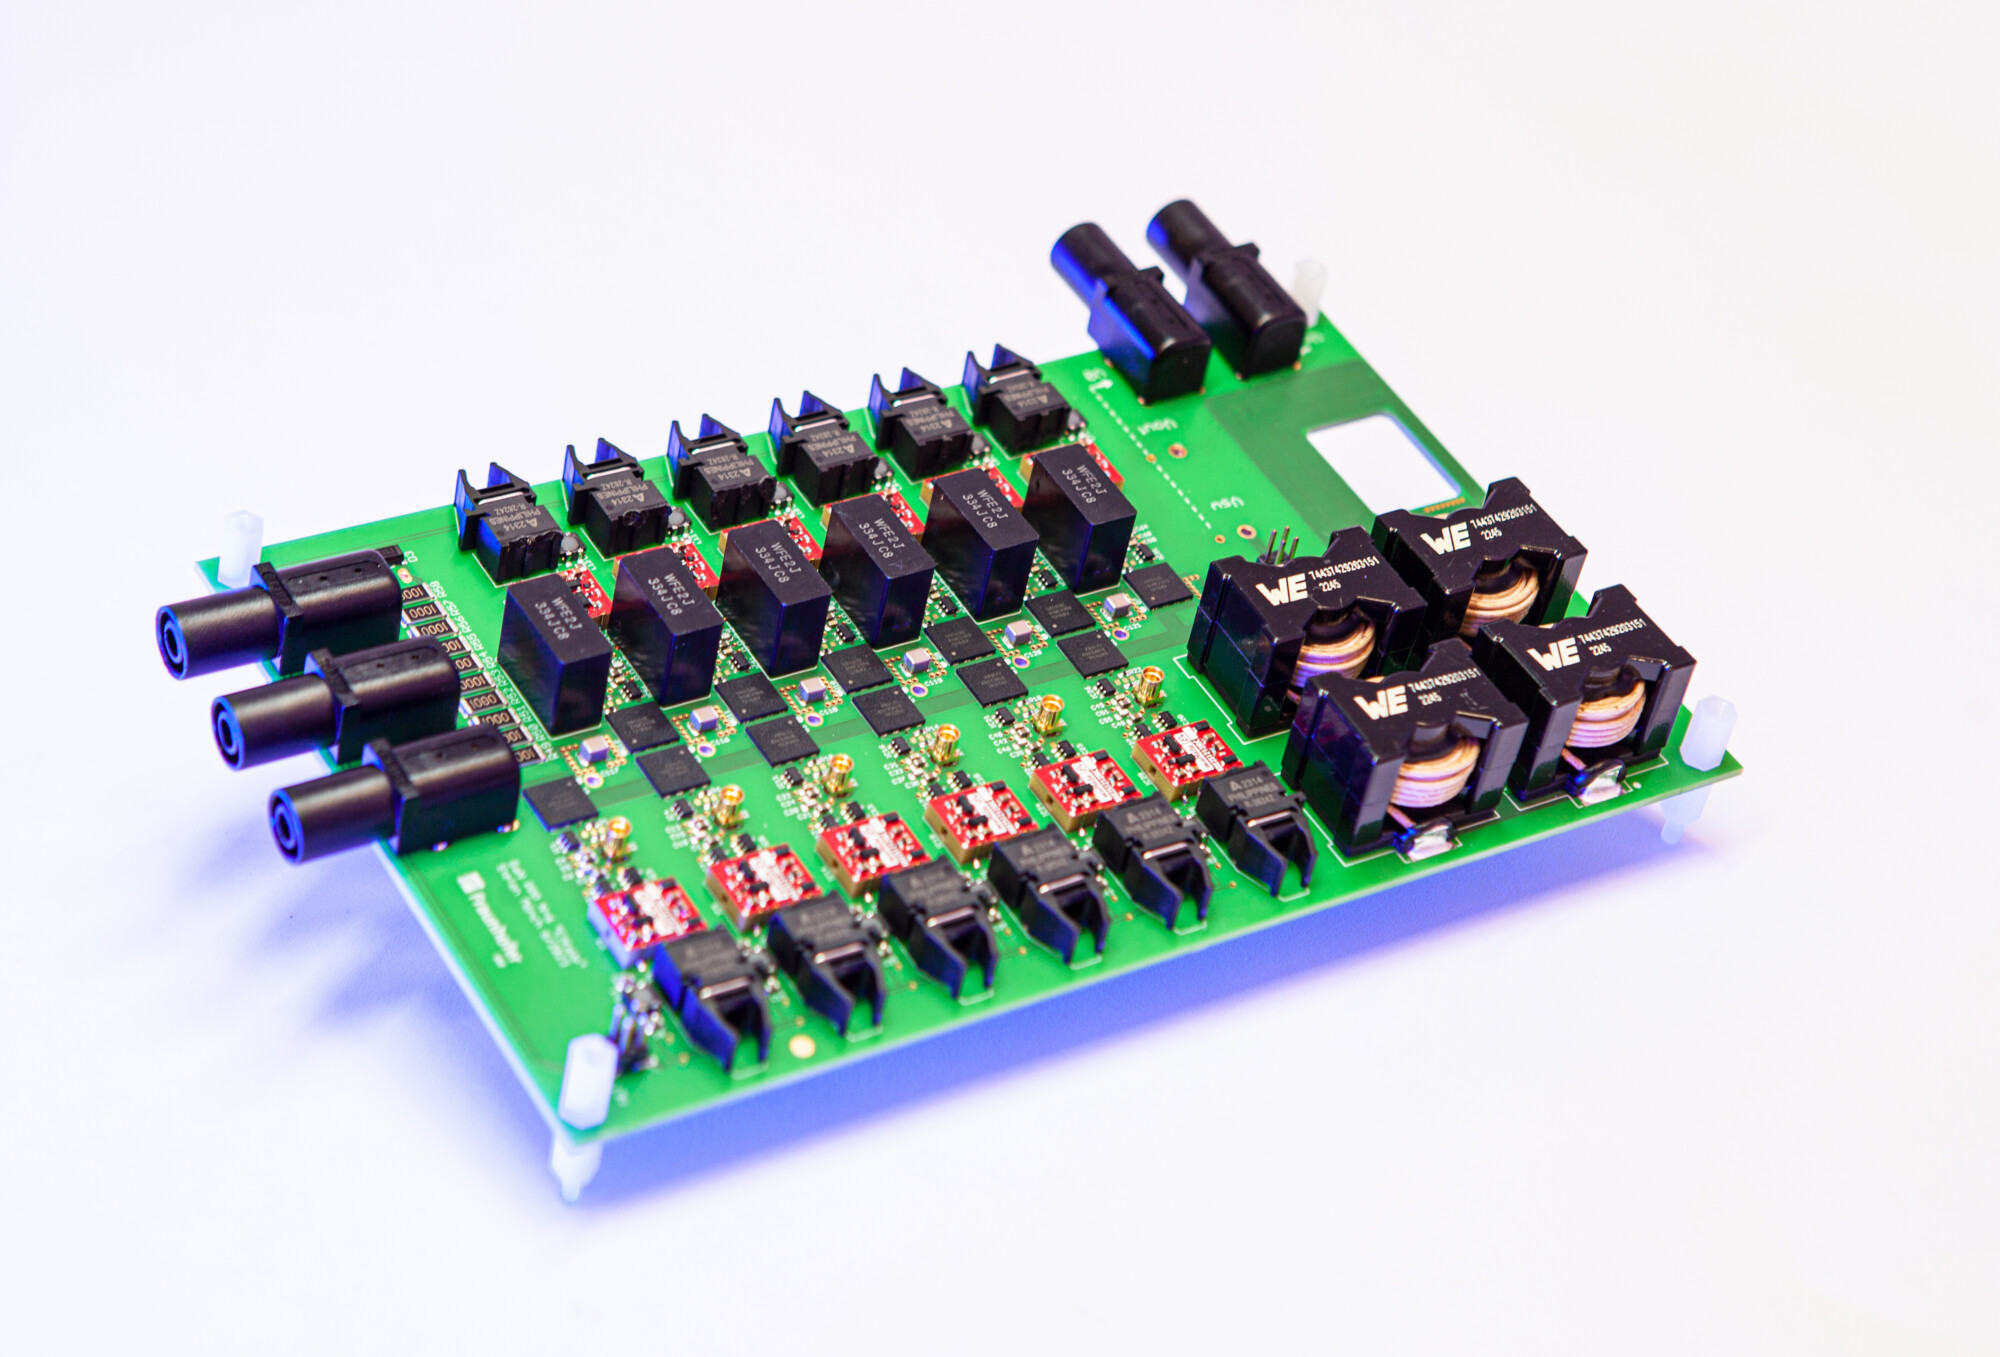 Multilevel voltage converter with high-voltage GaN transistors, developed at Fraunhofer IAF